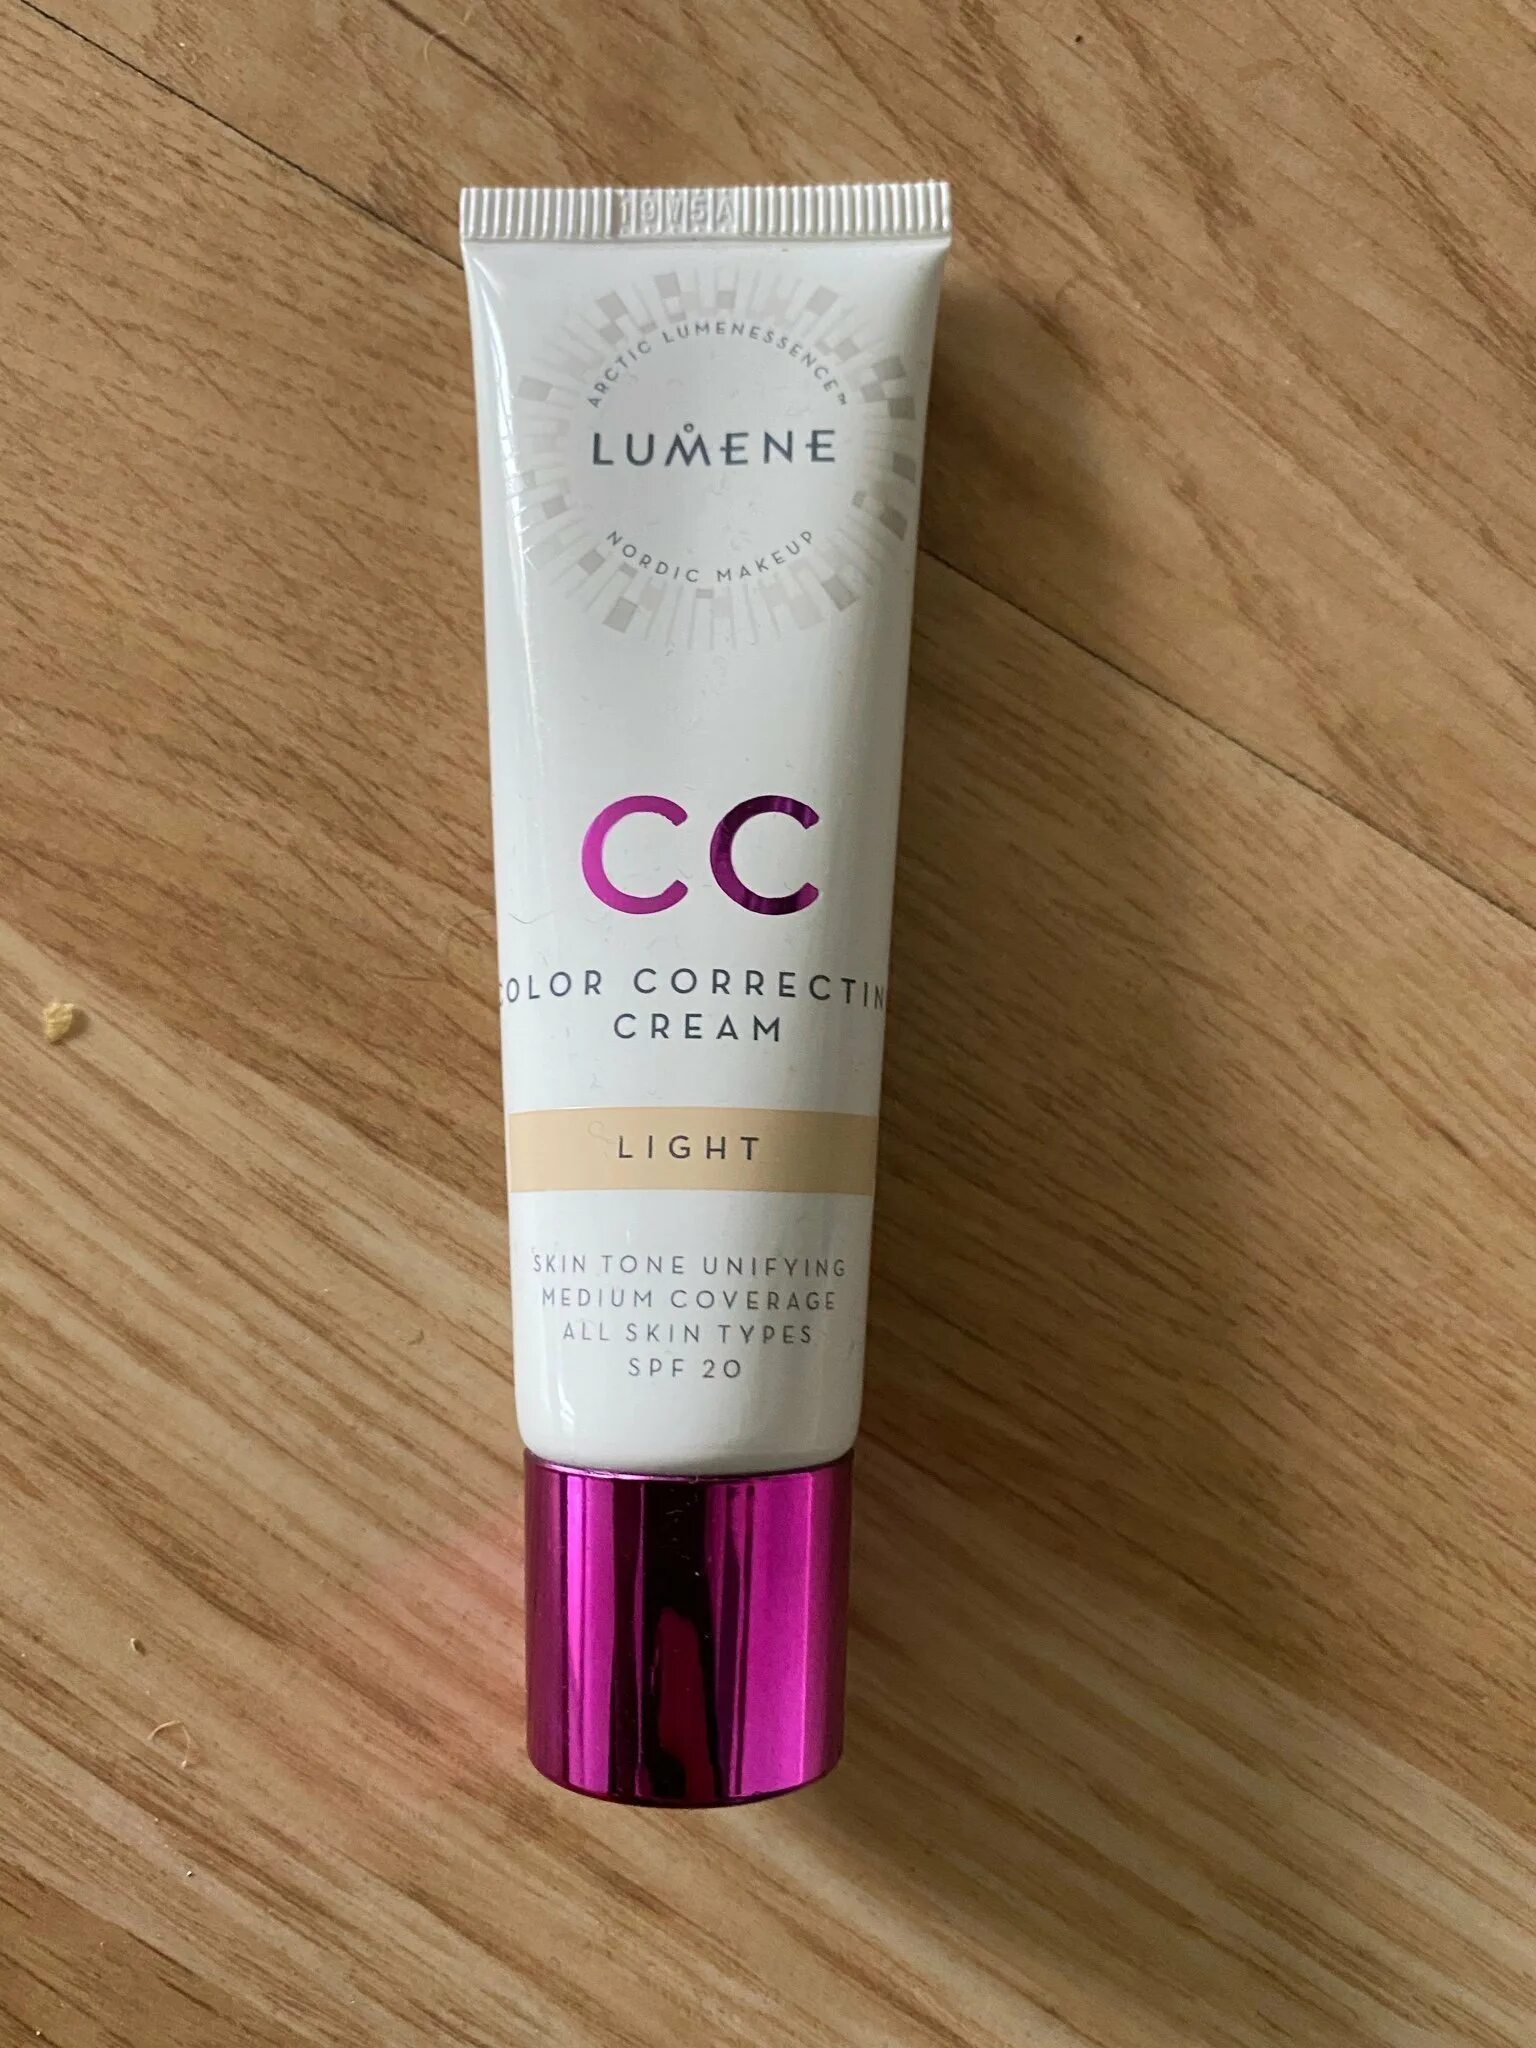 Люмене сс крем. Lumene cc Color Correcting Cream SPF 20. Lumene cc Color Correcting Cream. Lumene cc Medium. Lumene cc Cream.